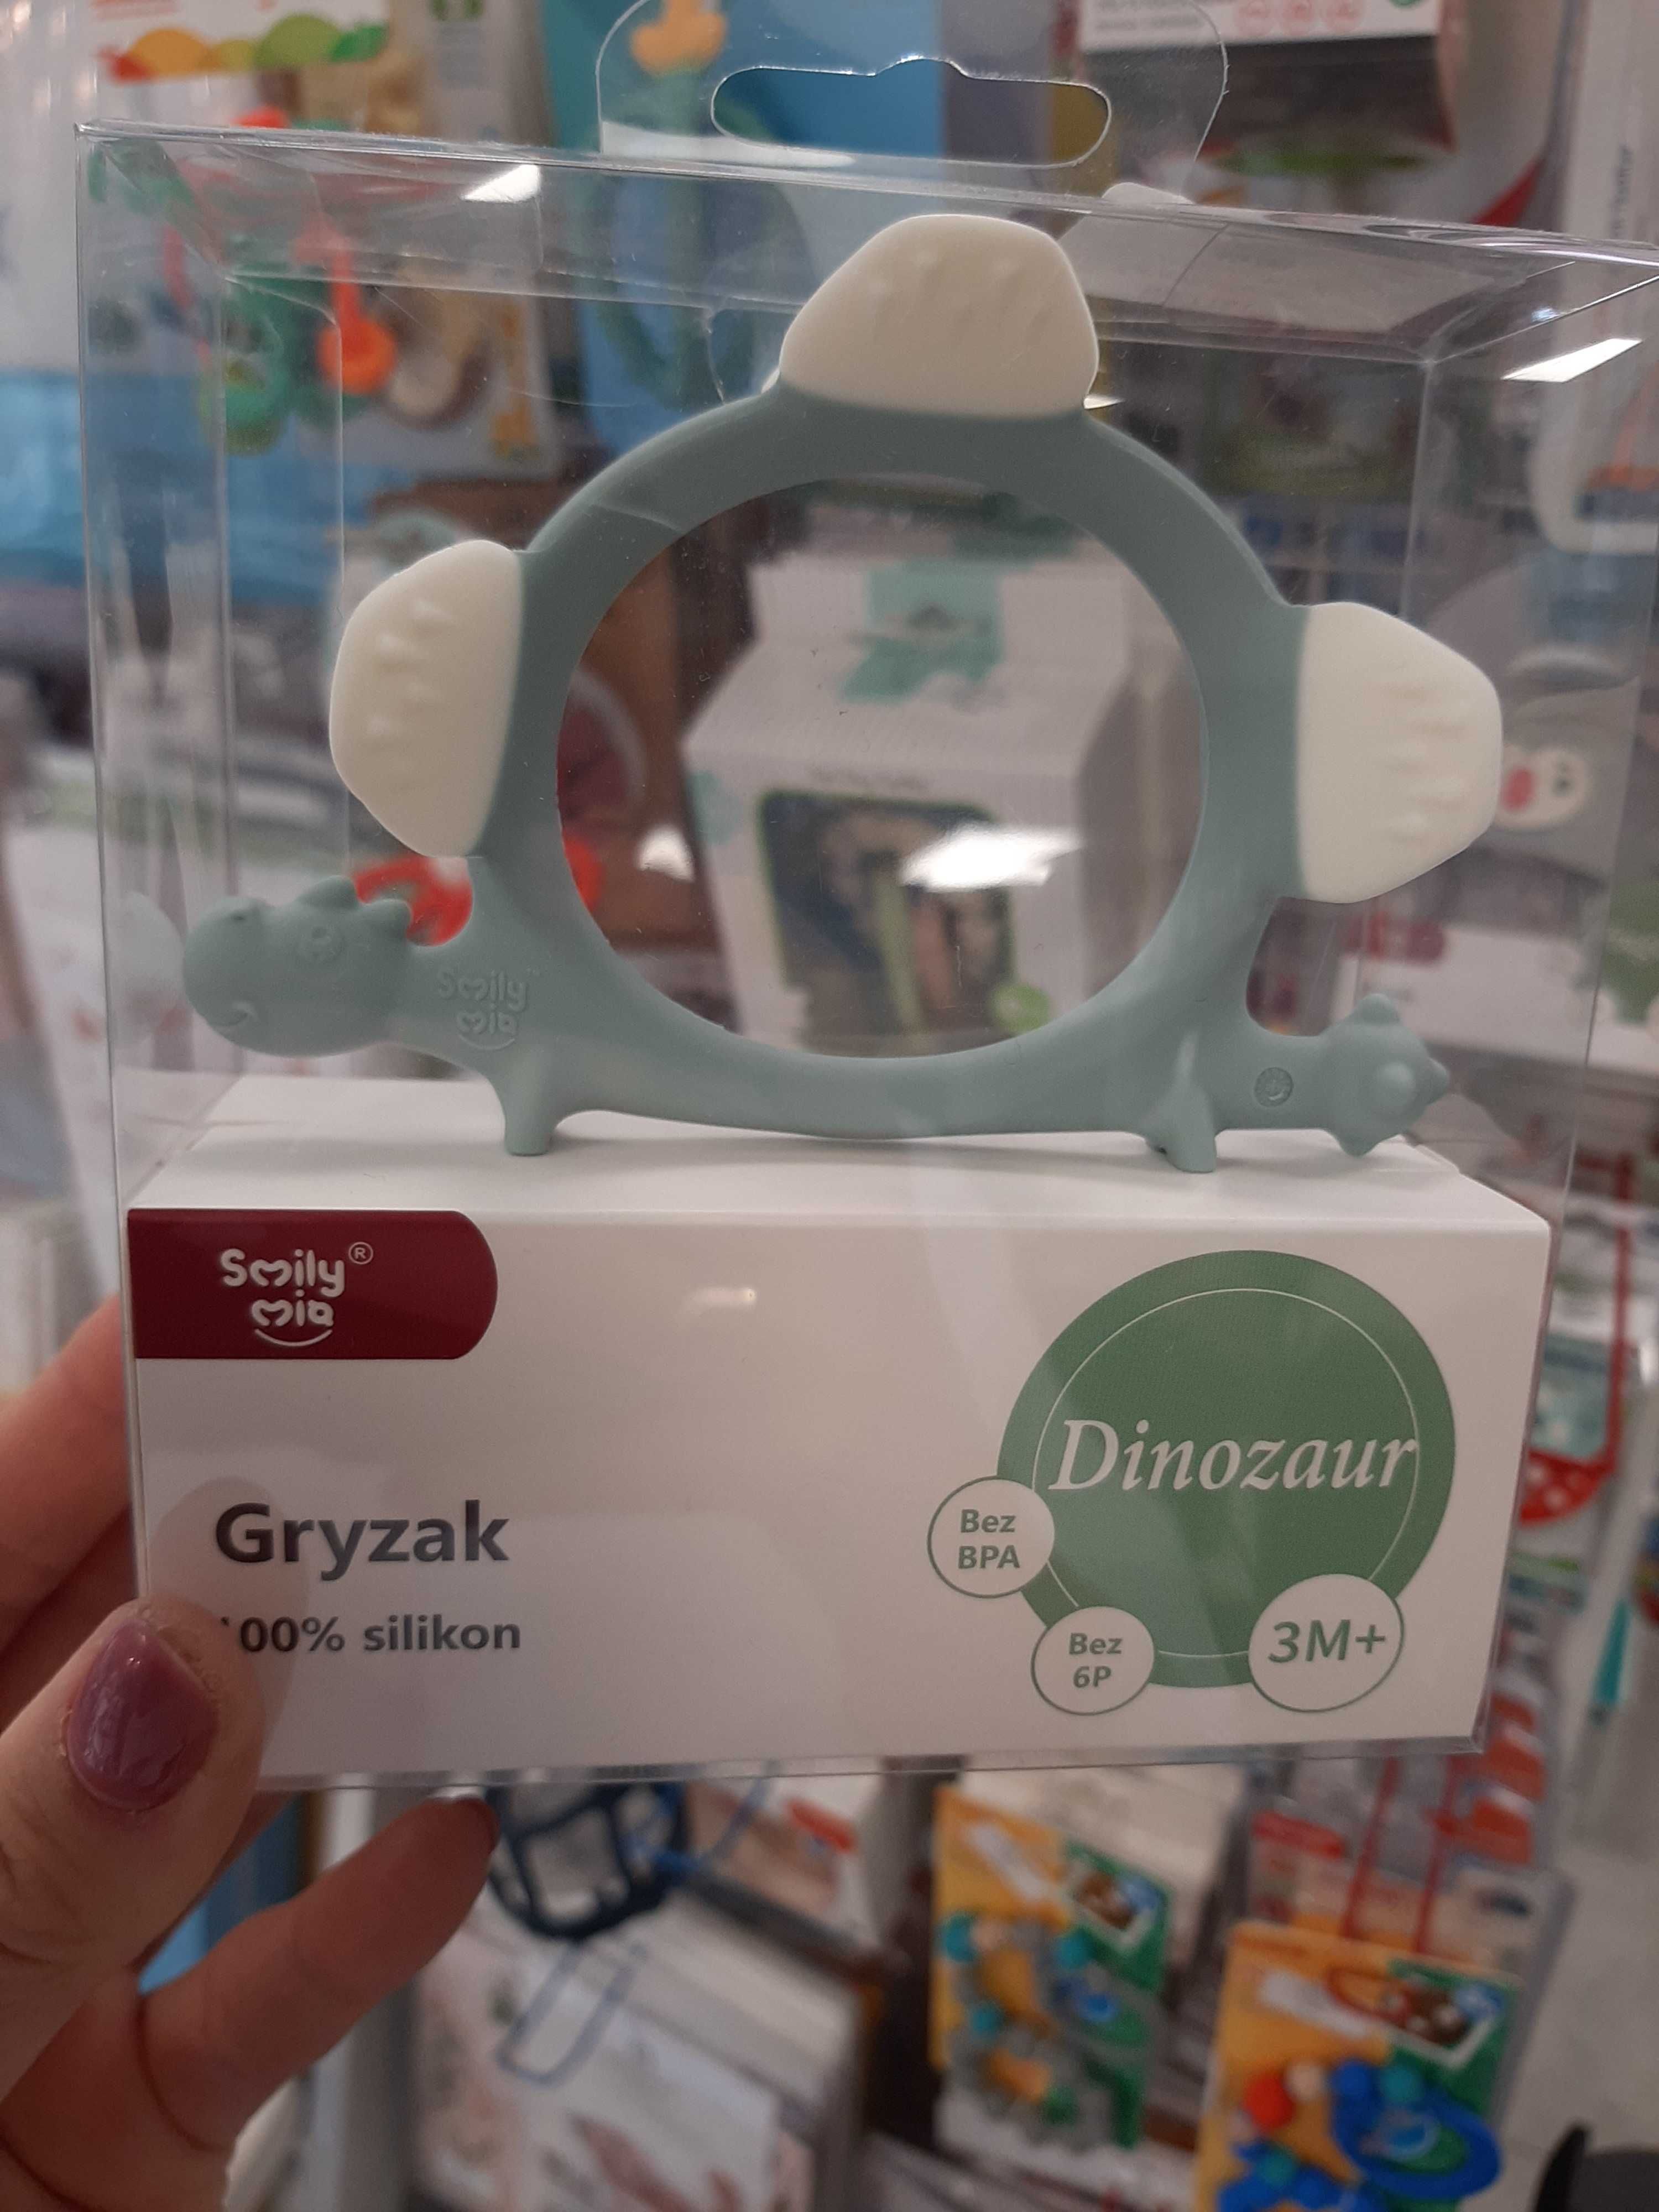 SMILY MIA Gryzak Dinozaur Norman Iron Gree 3m+ MA7761